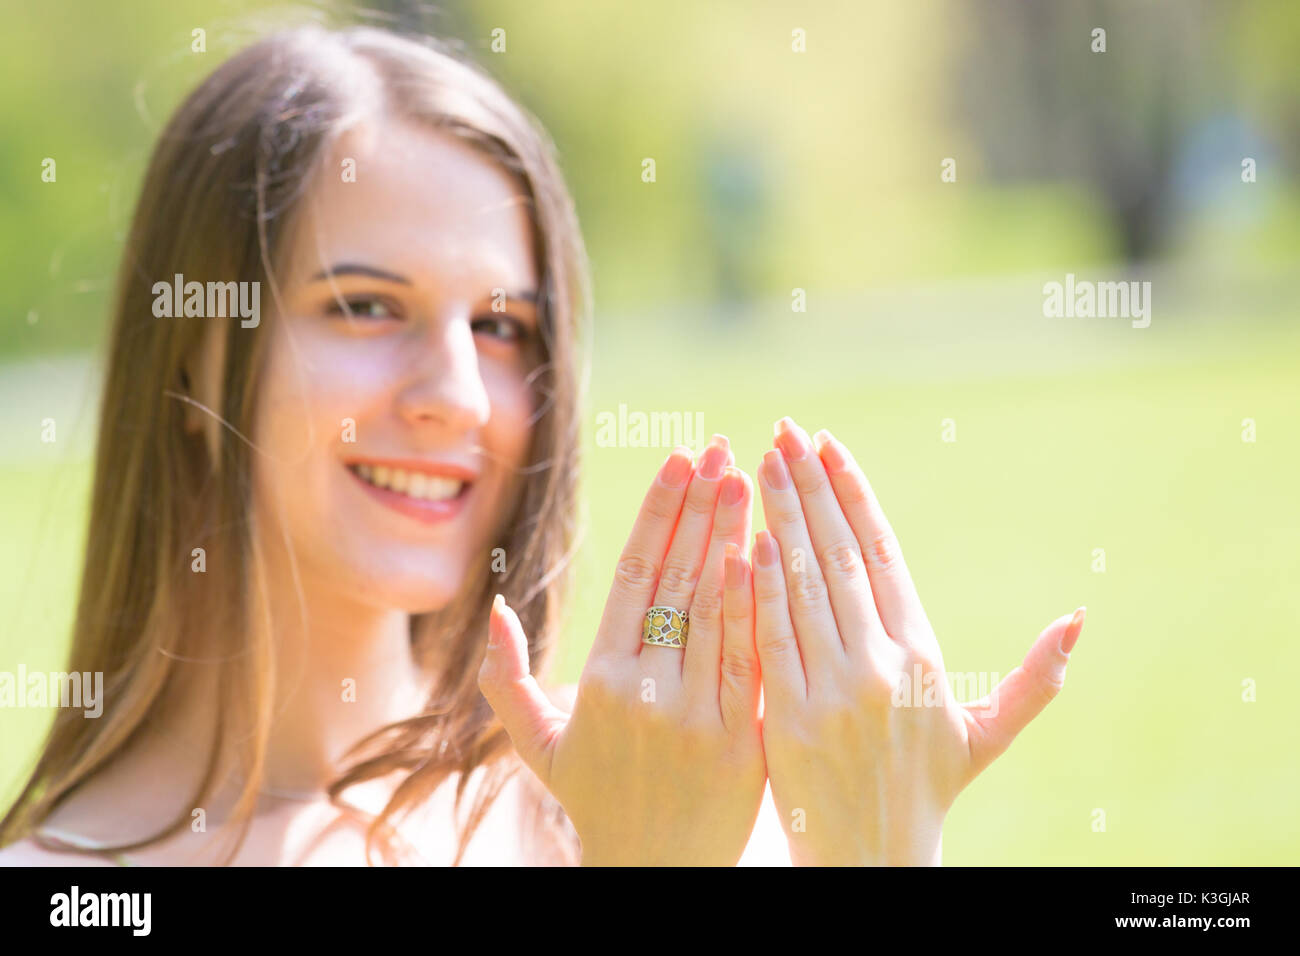 Porträt der jungen schönen Frau mit langem Haar zeigt schöne Nägel an Händen Stockfoto